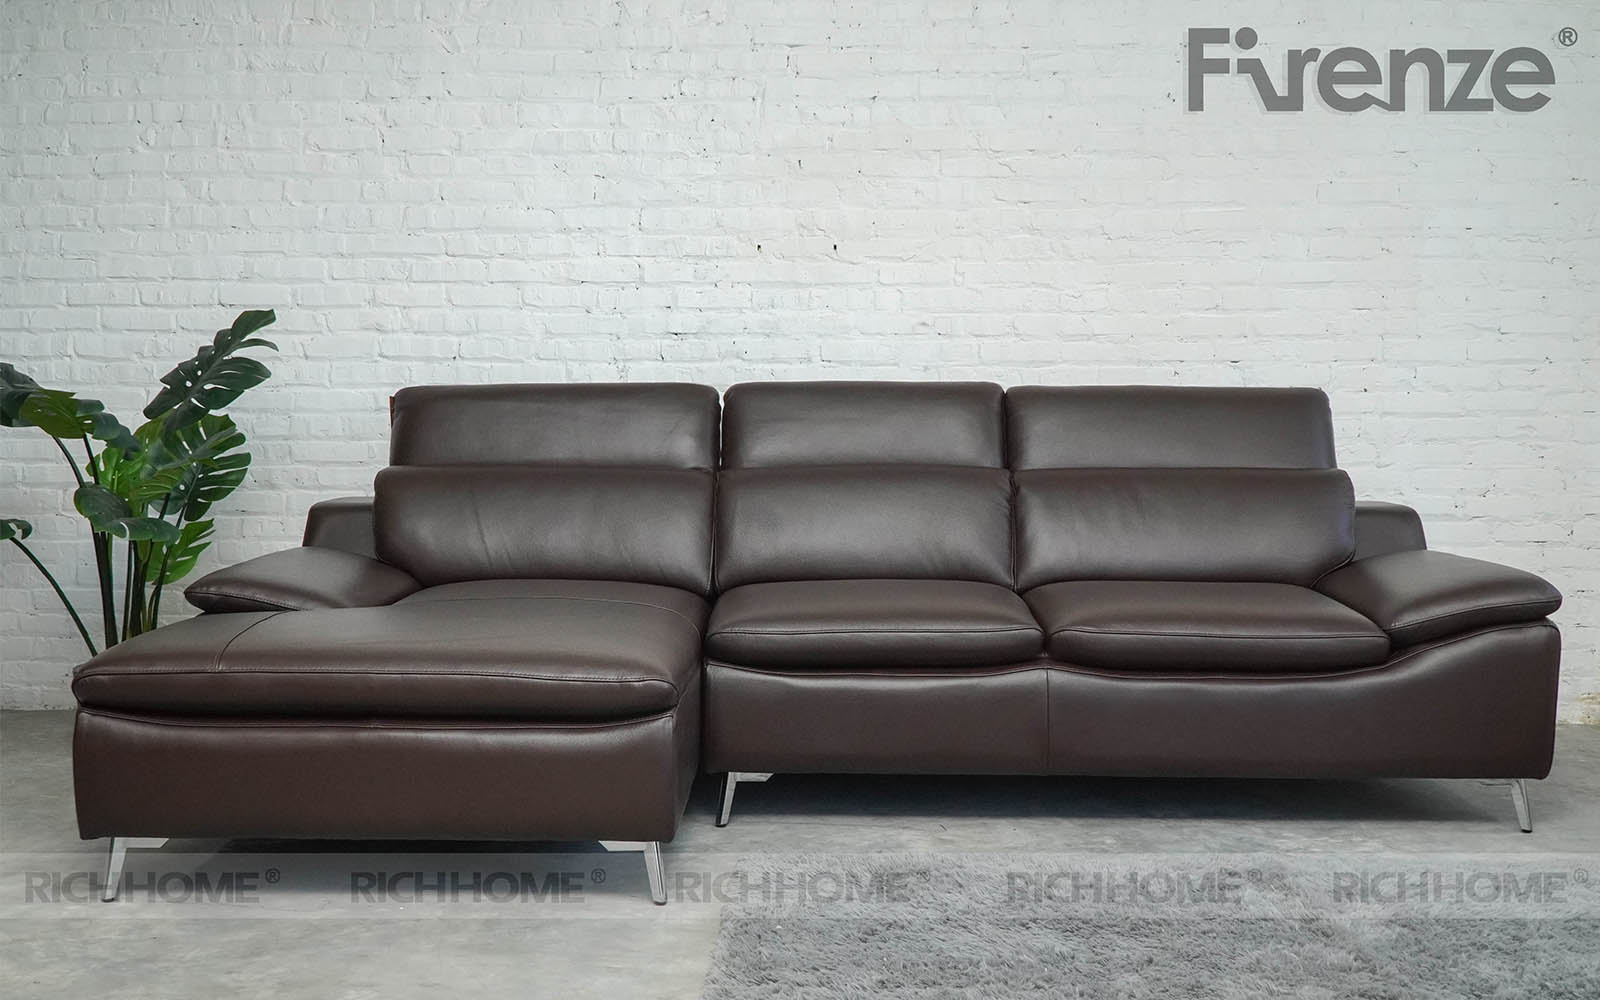 7 mẫu sofa nâu da bò màu đẹp sang, thiết kế thời thượng - Ảnh 3